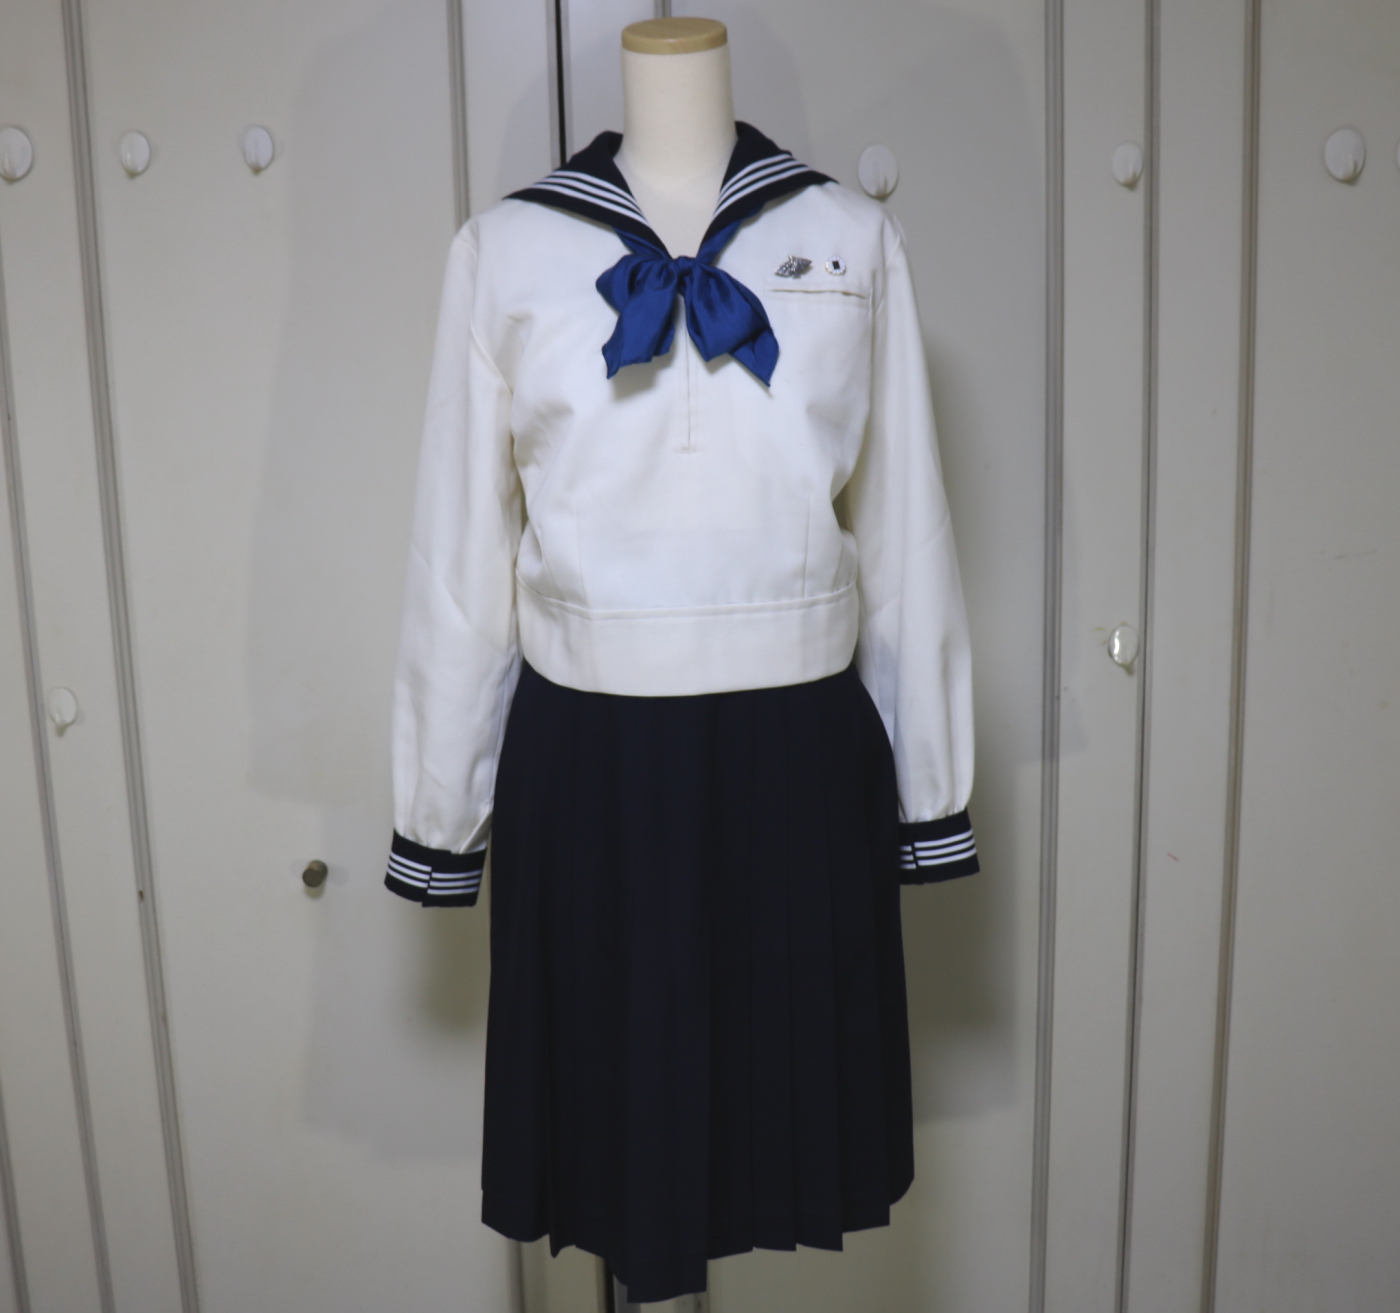 東京女学館 冬セーラー服を買取させていただきました | 制服買取東京2020